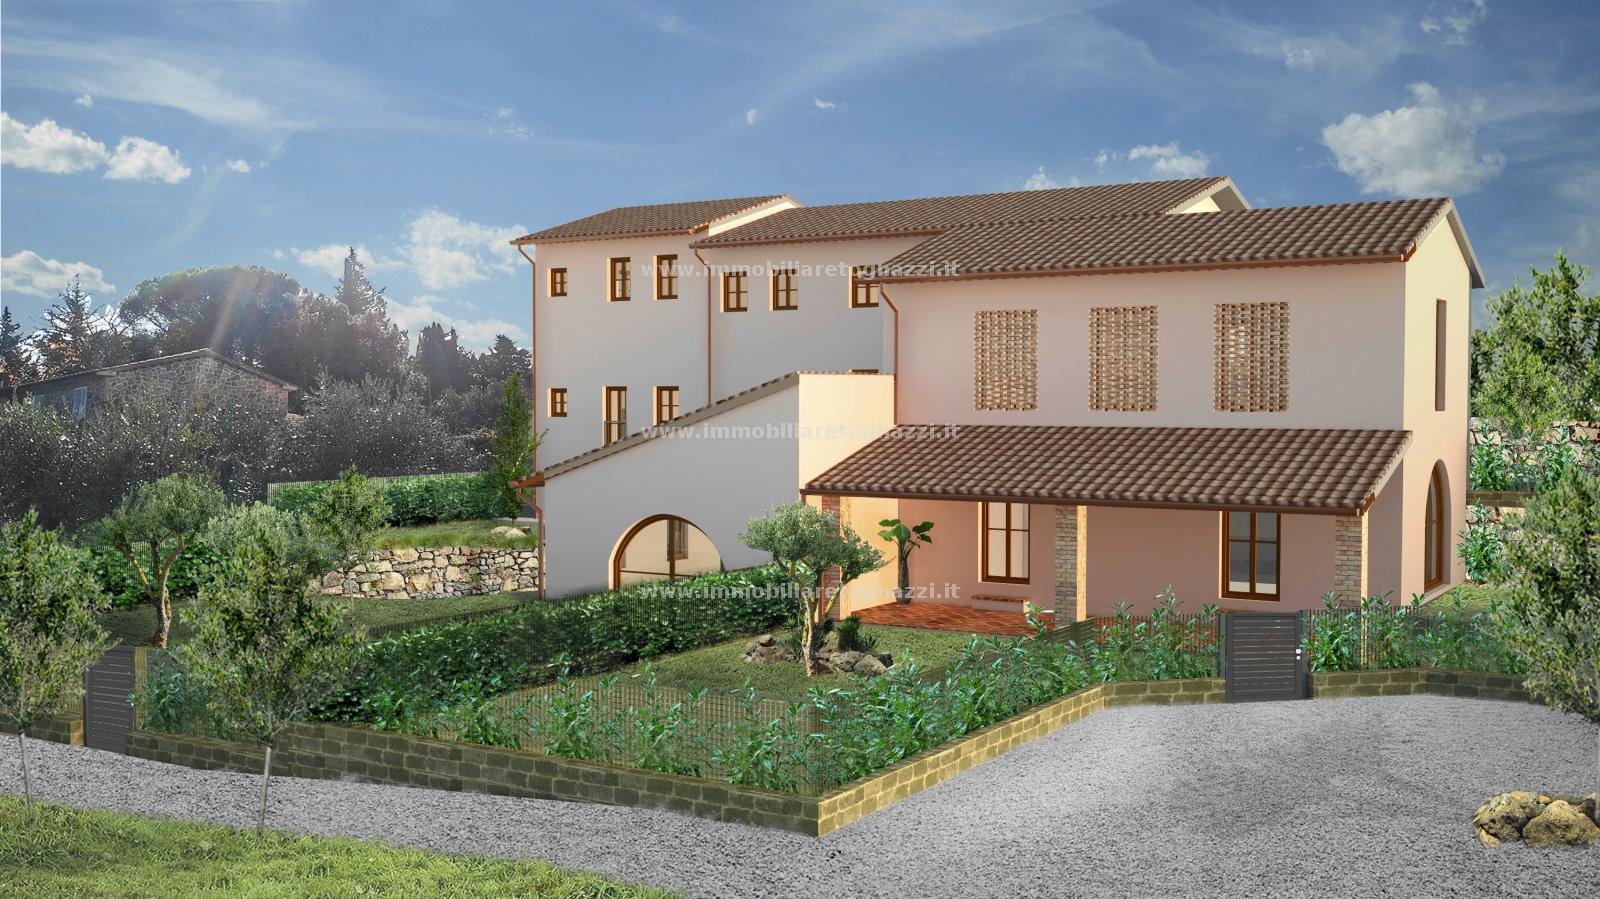 Villa a Schiera in vendita a Gambassi Terme, 5 locali, prezzo € 290.000 | PortaleAgenzieImmobiliari.it